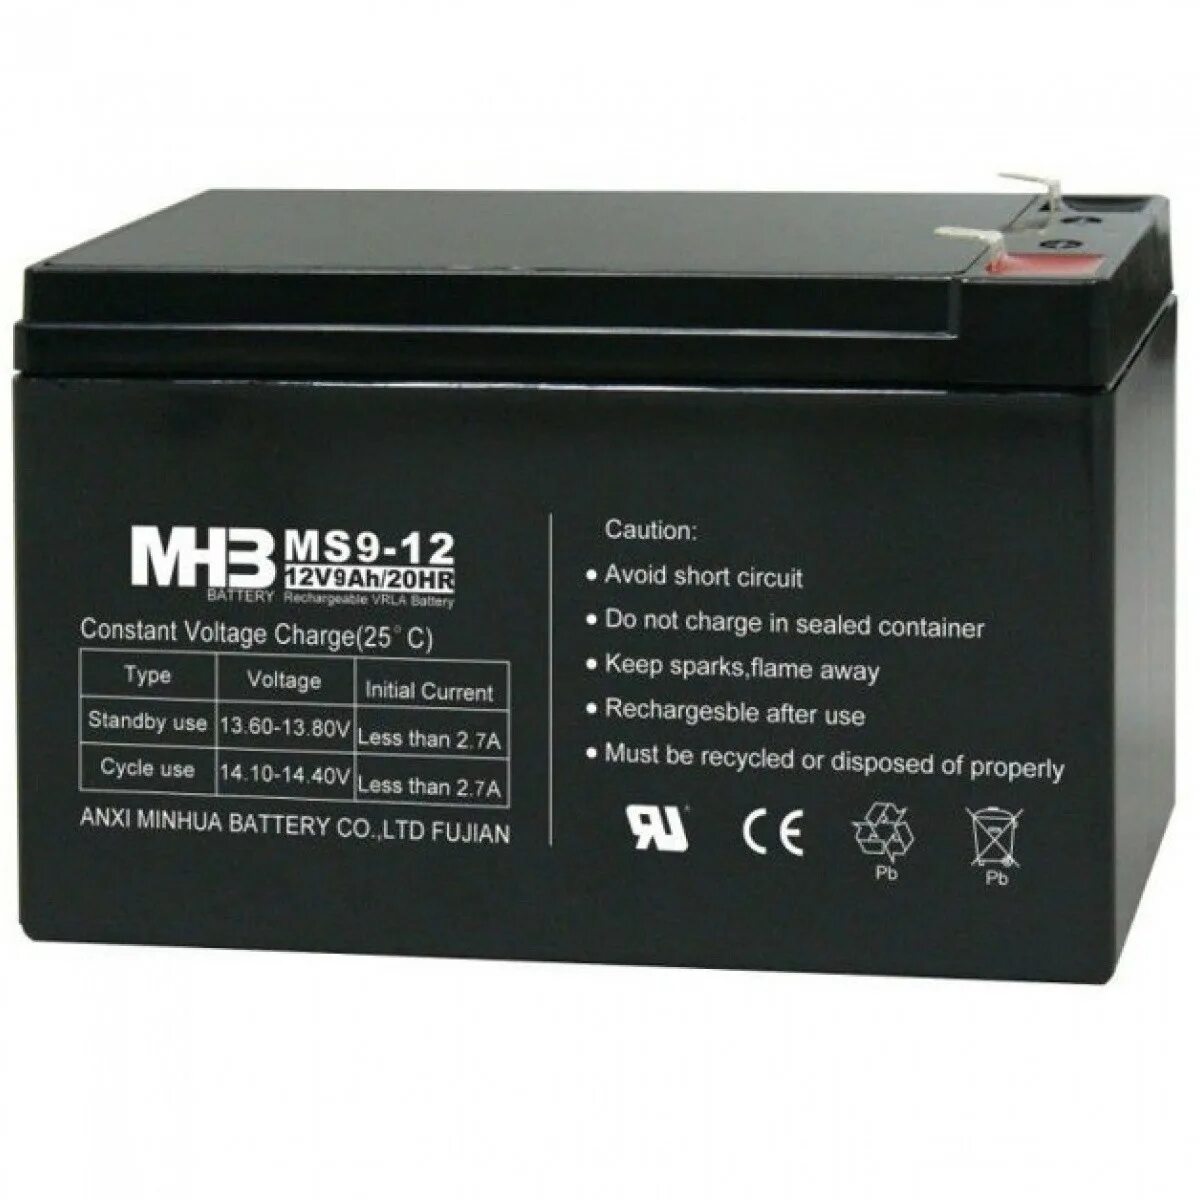 12v 9ah купить. MHB ms7-12 12v7ah/20hr. Аккумулятор ms7-12 12v7ah/20hr. Аккумуляторная батарея MHB ms9-12. Battery ups 12v-5ah.